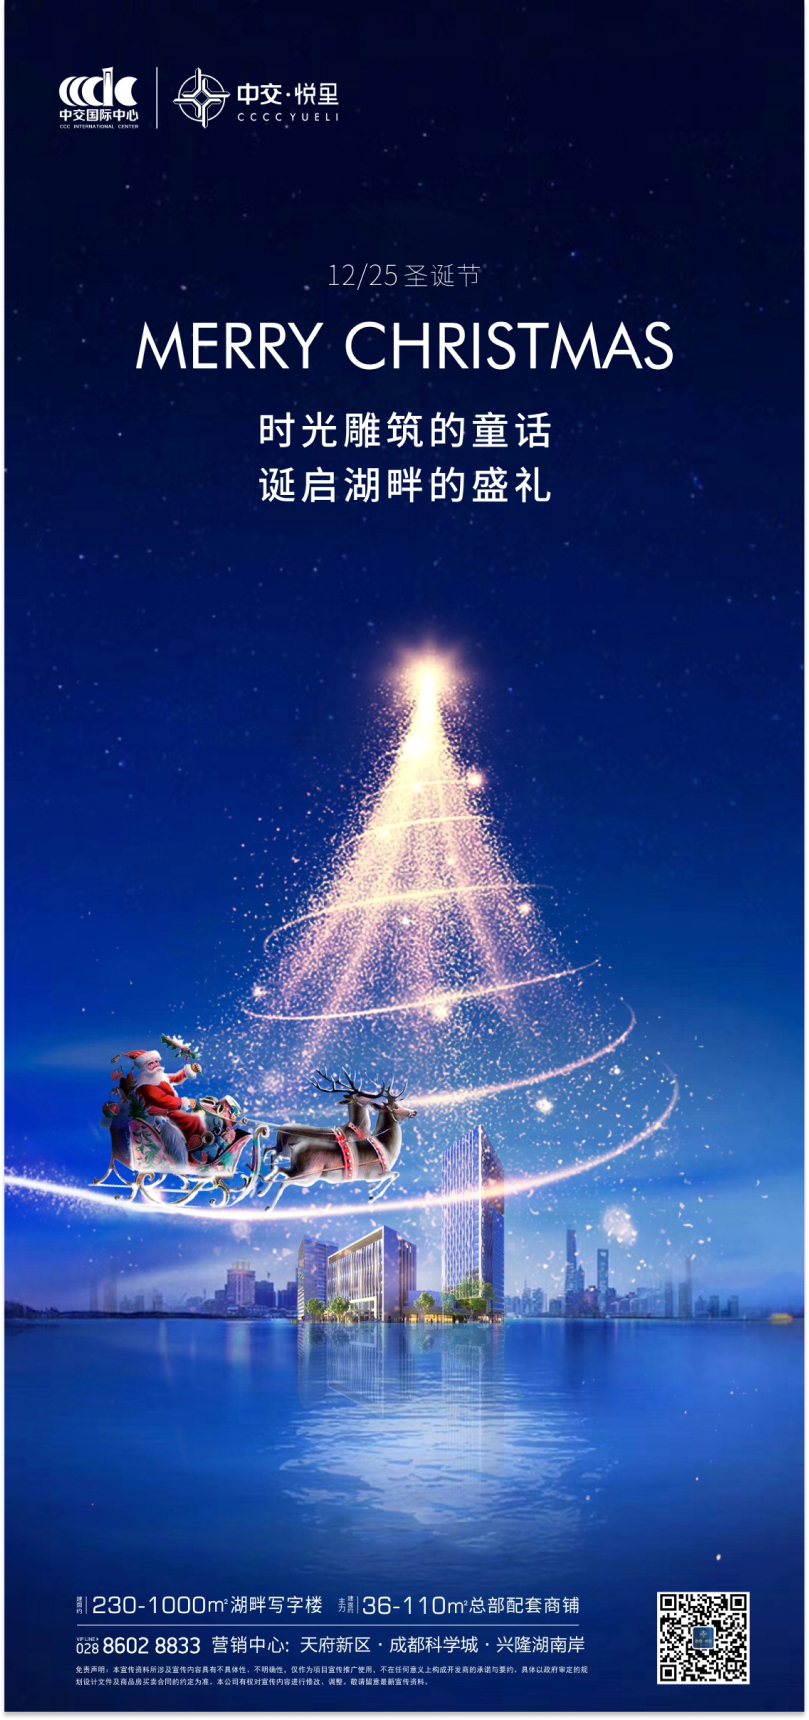 中交悦里—节日海报设计